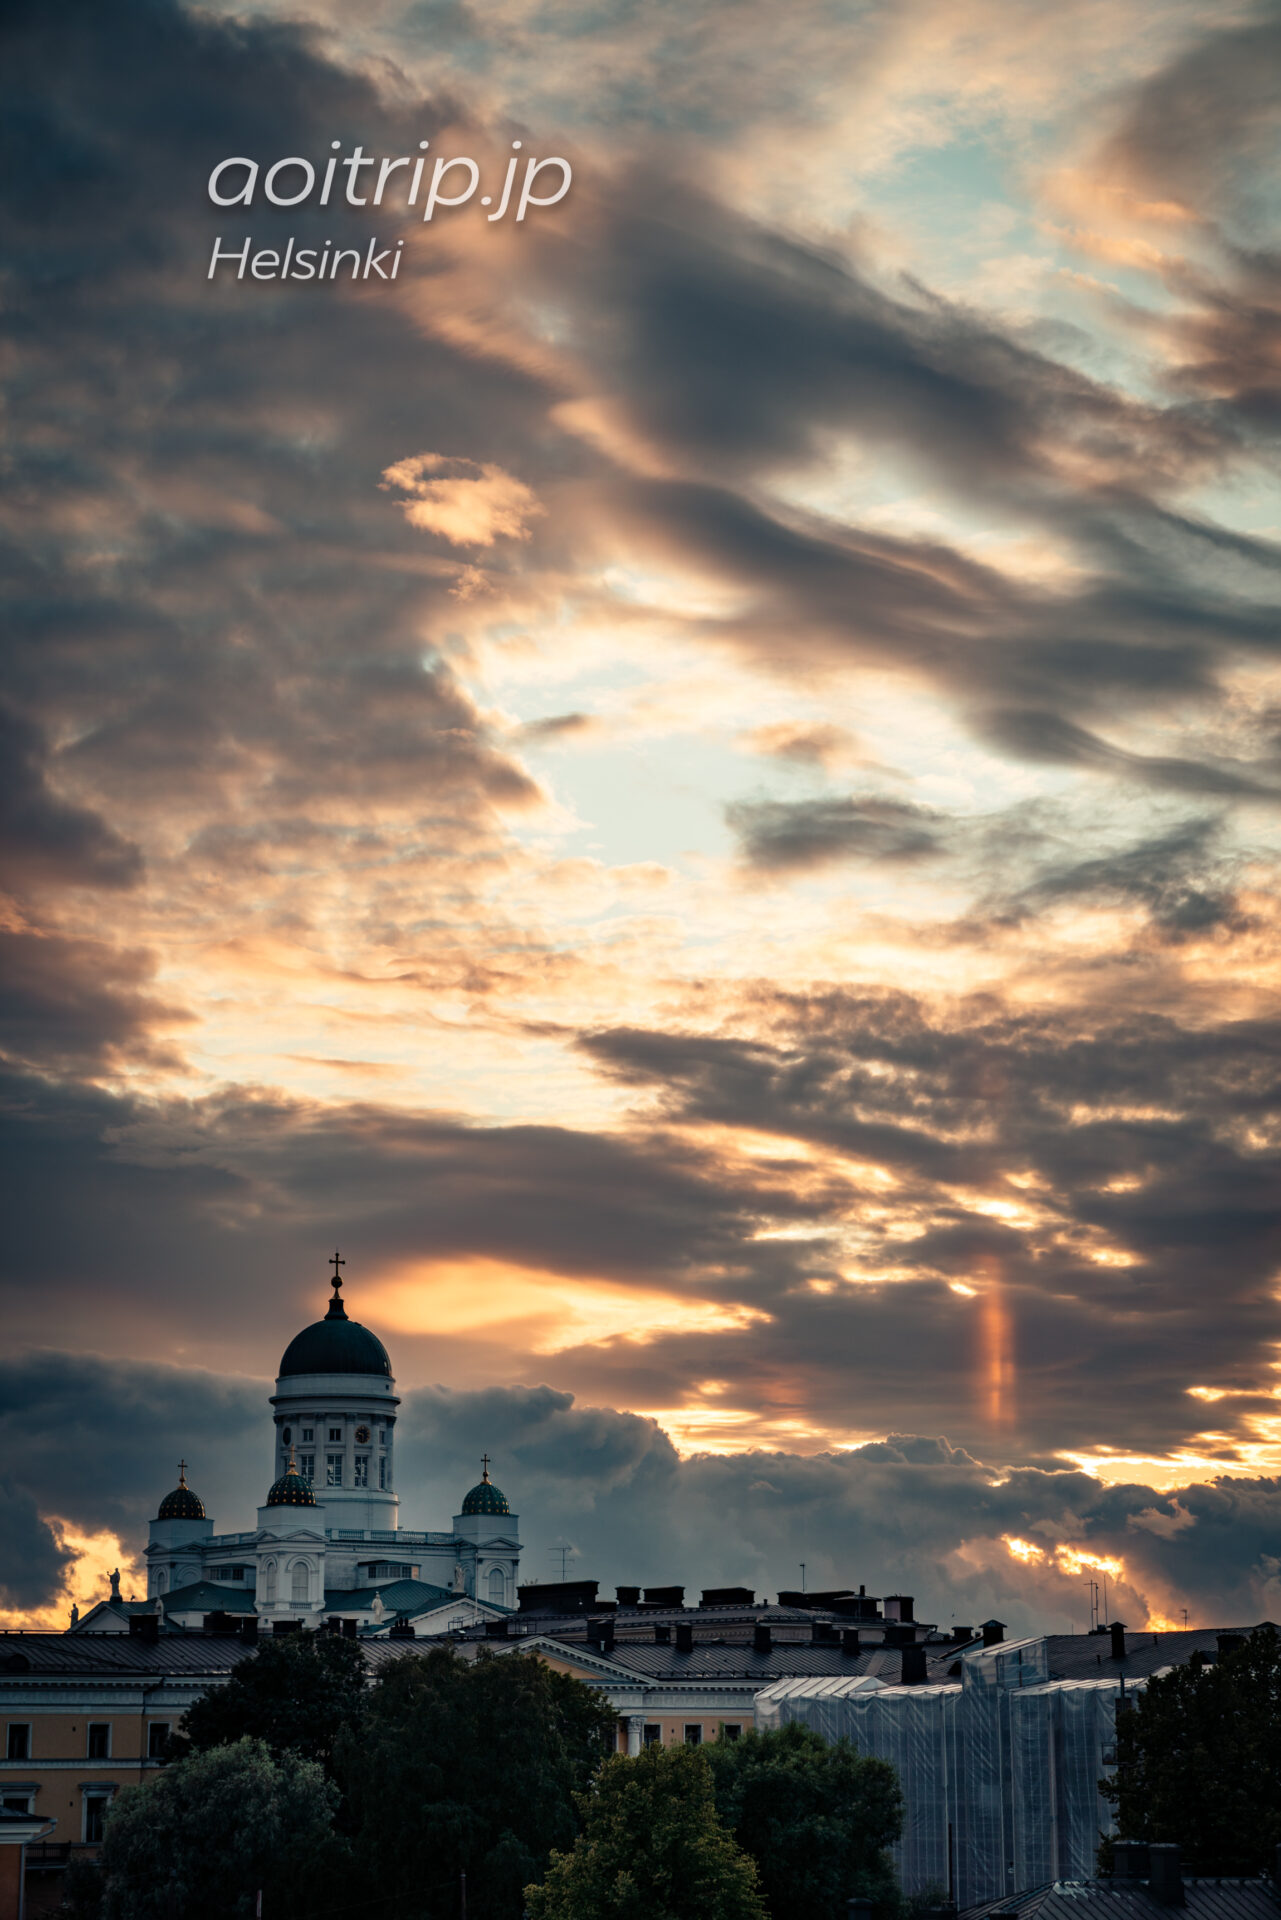 ヘルシンキの生神女就寝大聖堂から望むヘルシンキ大聖堂